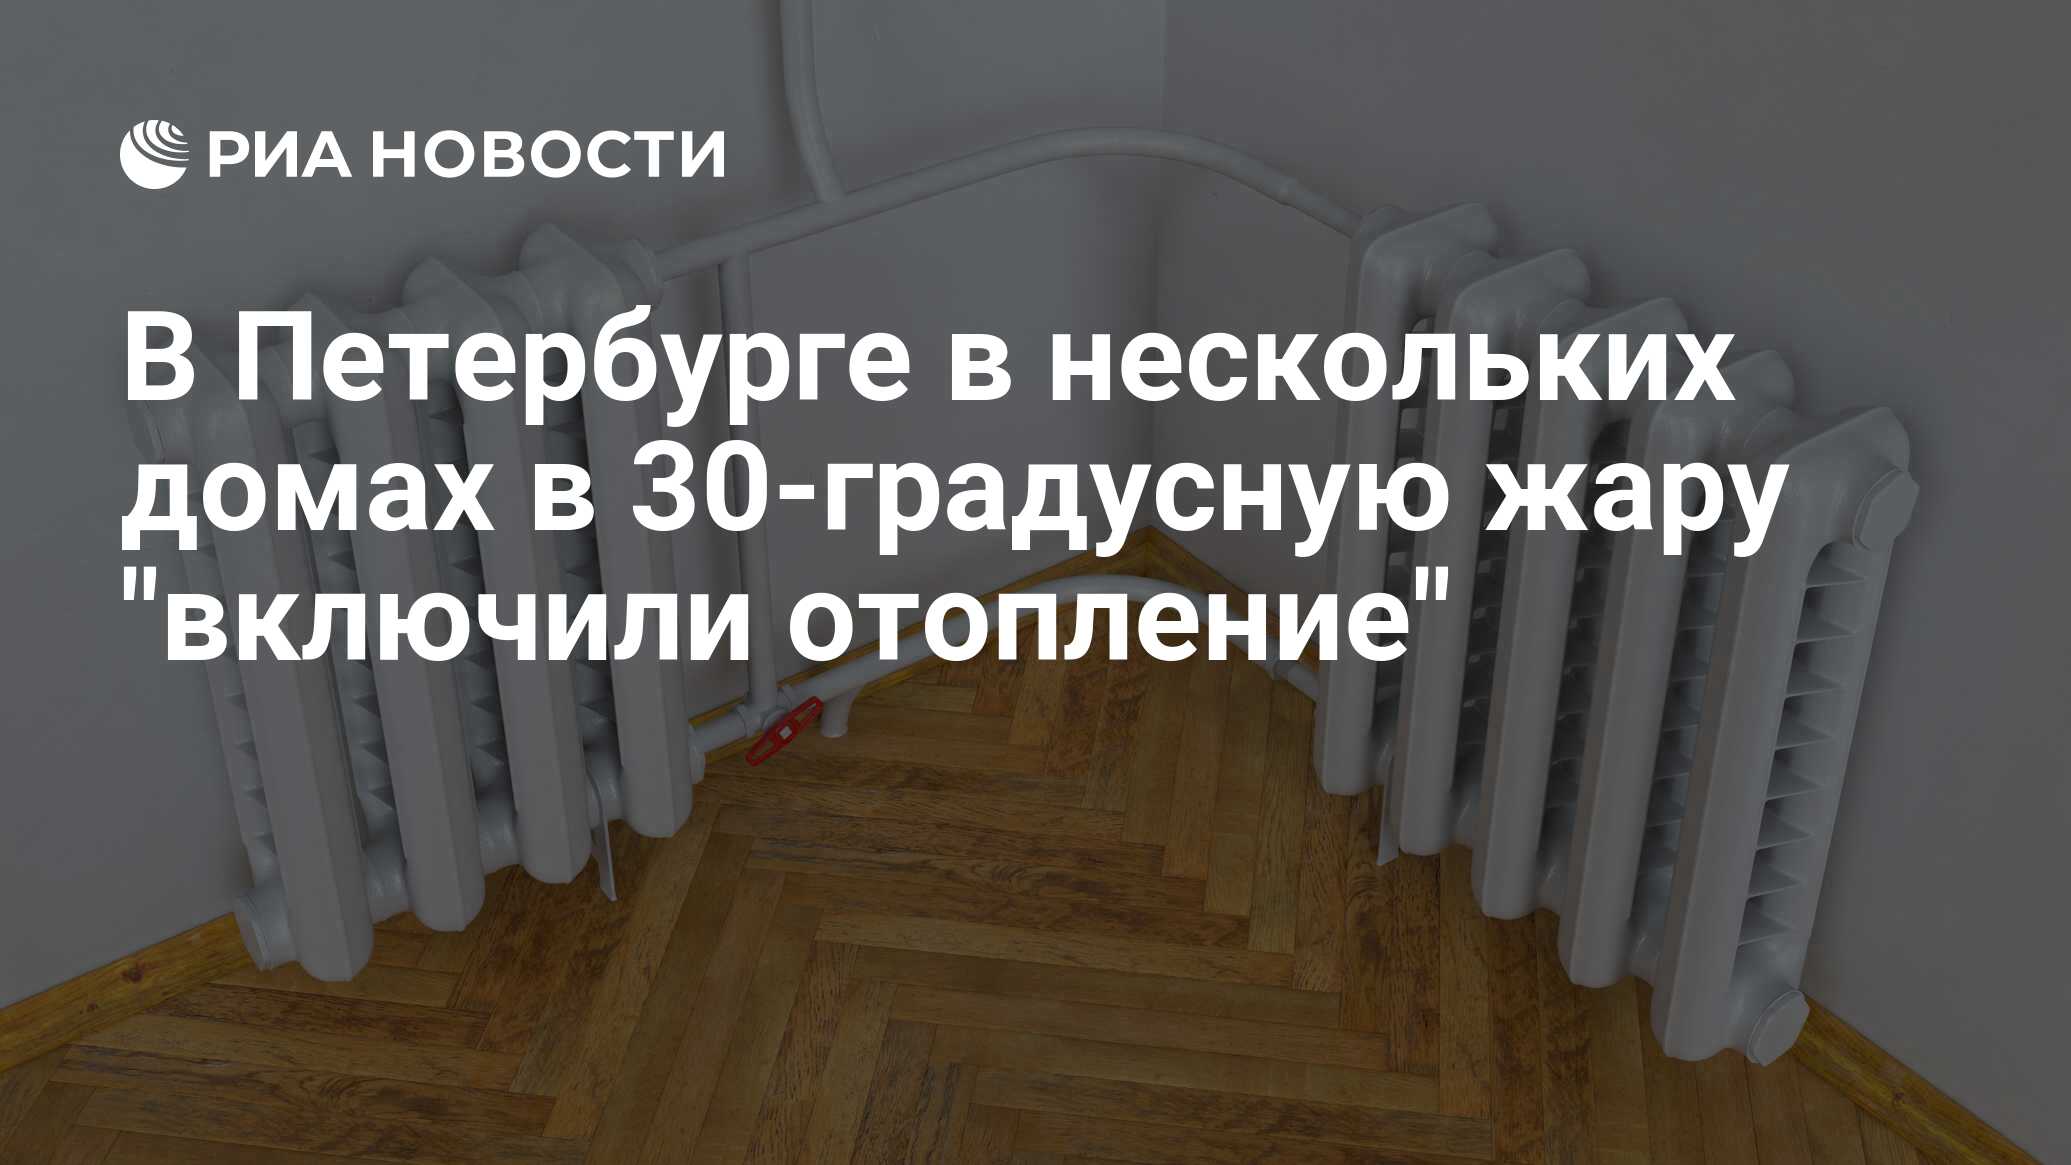 В Петербурге в нескольких домах в 30-градусную жару включили отопление -  РИА Новости, 21.06.2021